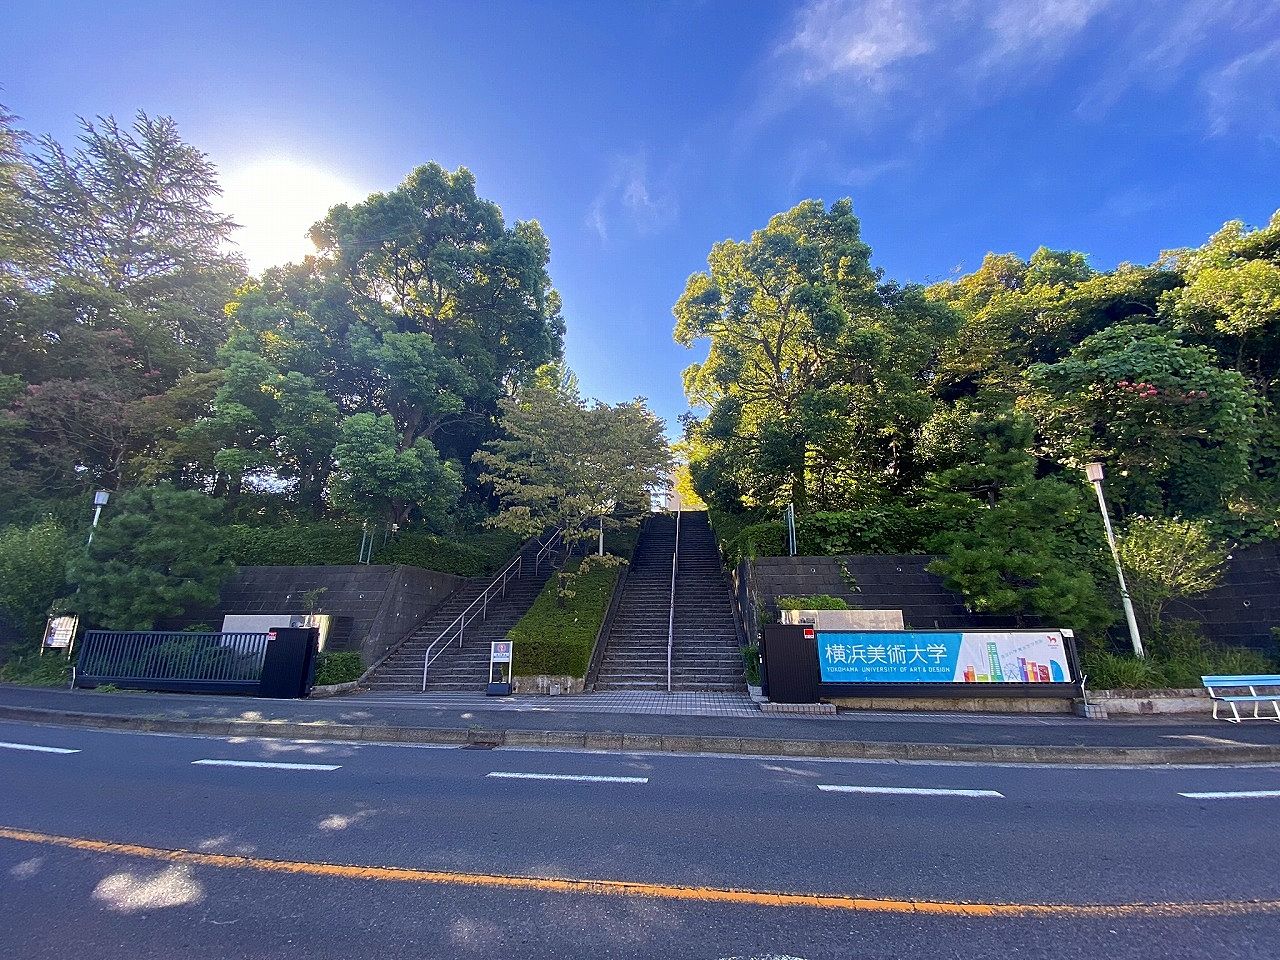 入学時、住み替えなど私立横浜美術大学周辺の一人暮らし用住居にいかがでしょうか？
Yokohama University of Art ＆ Design